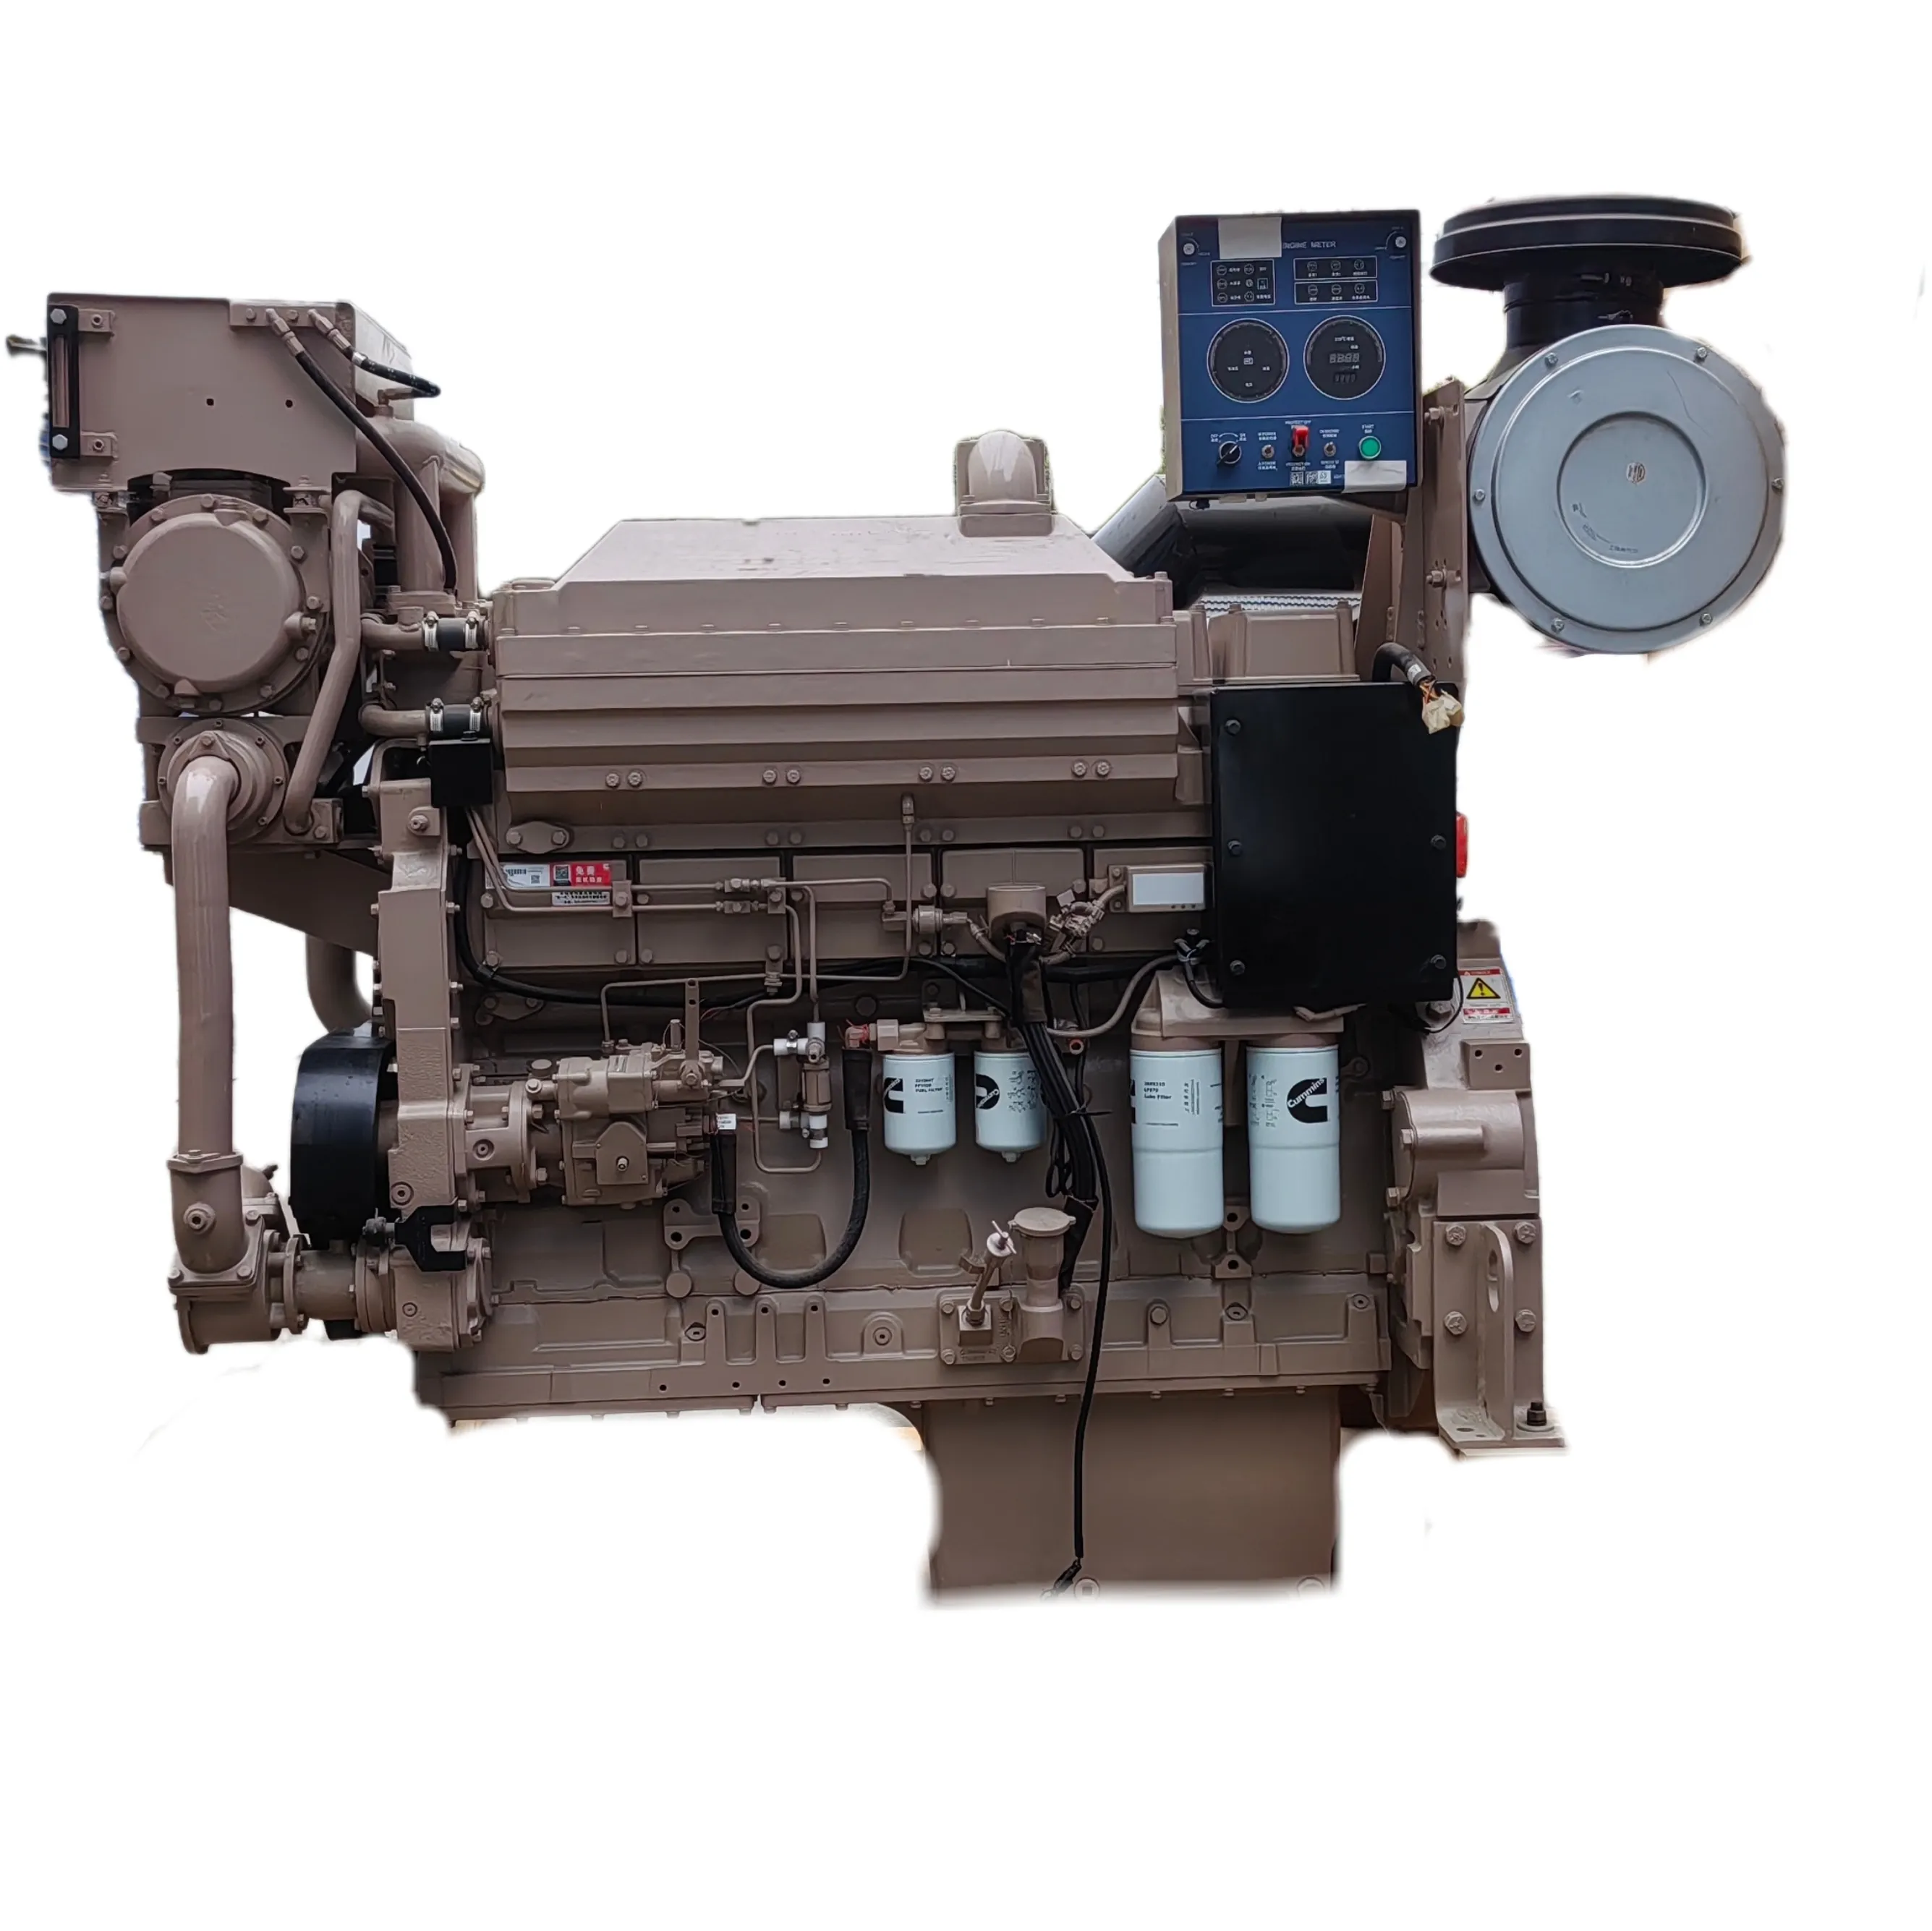 Scdc Hot Selling 4 Takes 6 Cilinders Marine Hoofdmotoren K19-M Dieselmotor